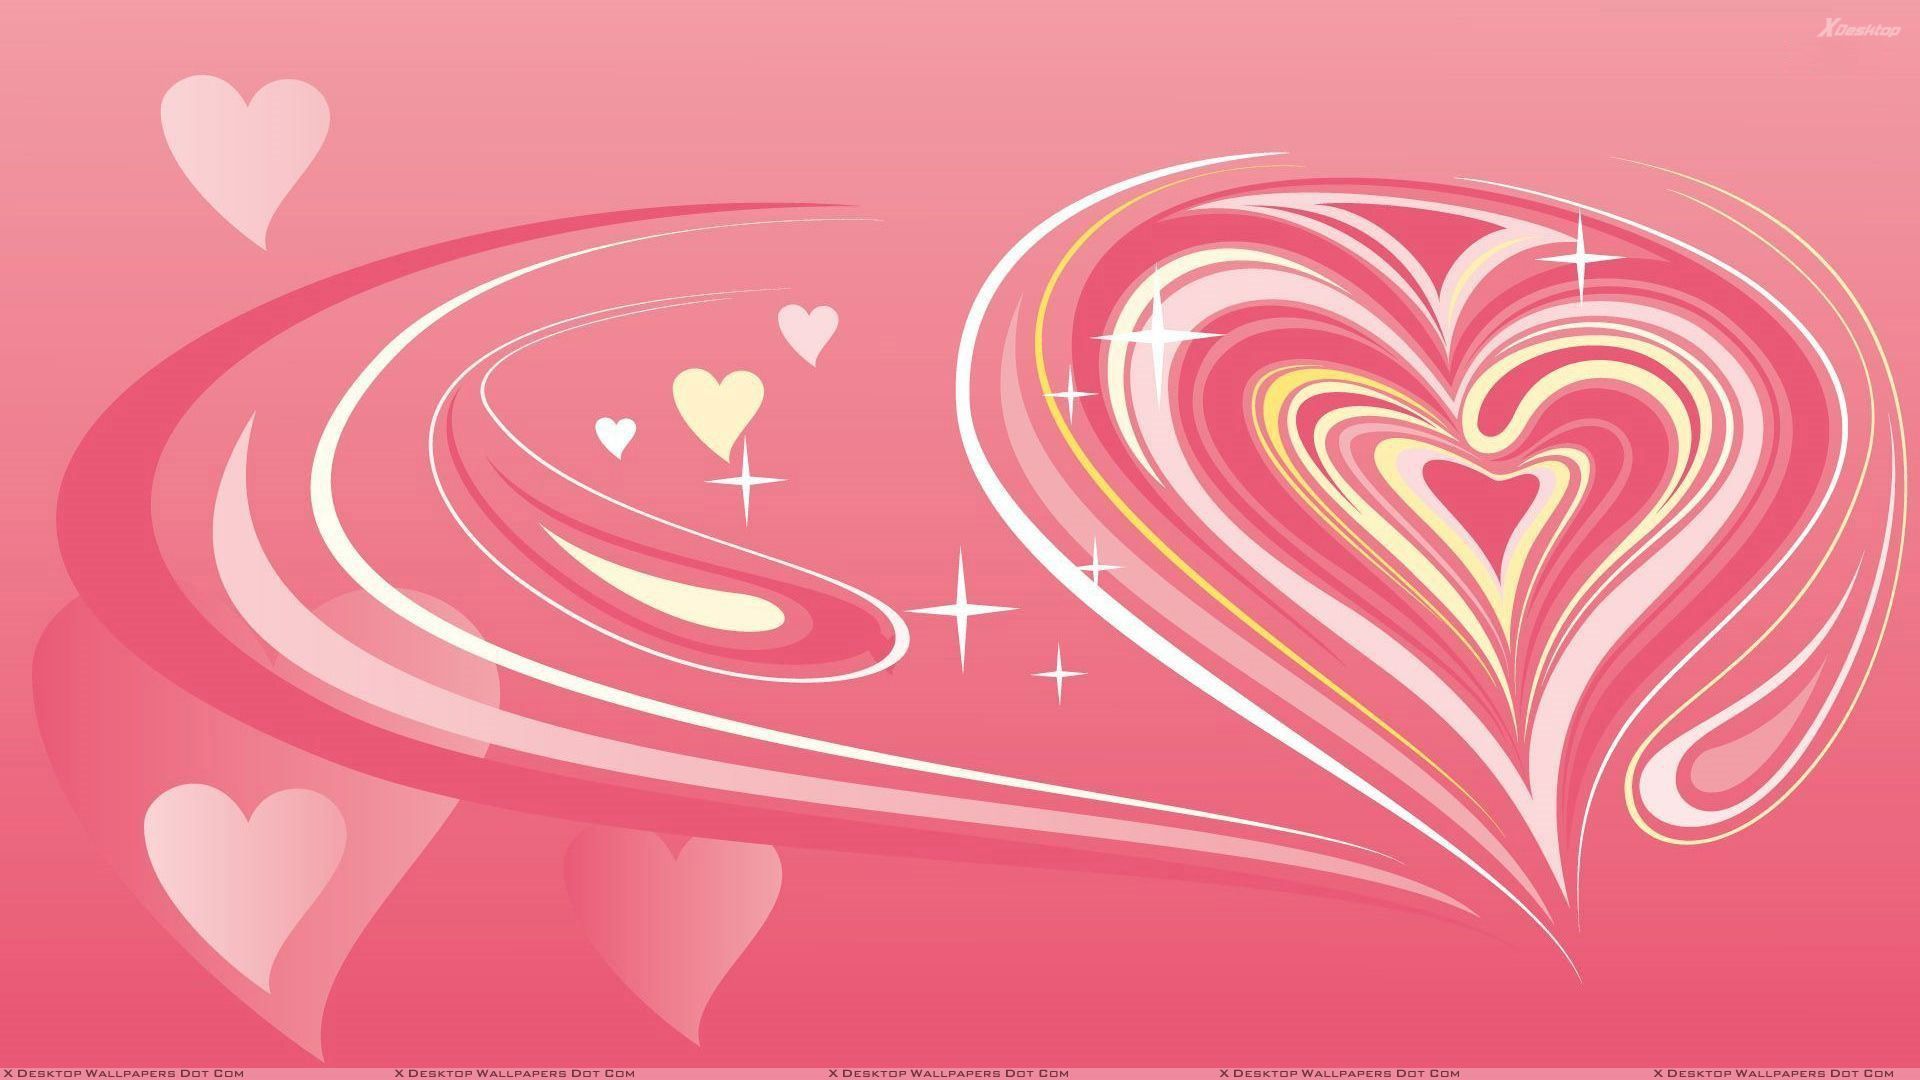 HEART Desktop Wallpaper. Artistic Heart And Pink Background